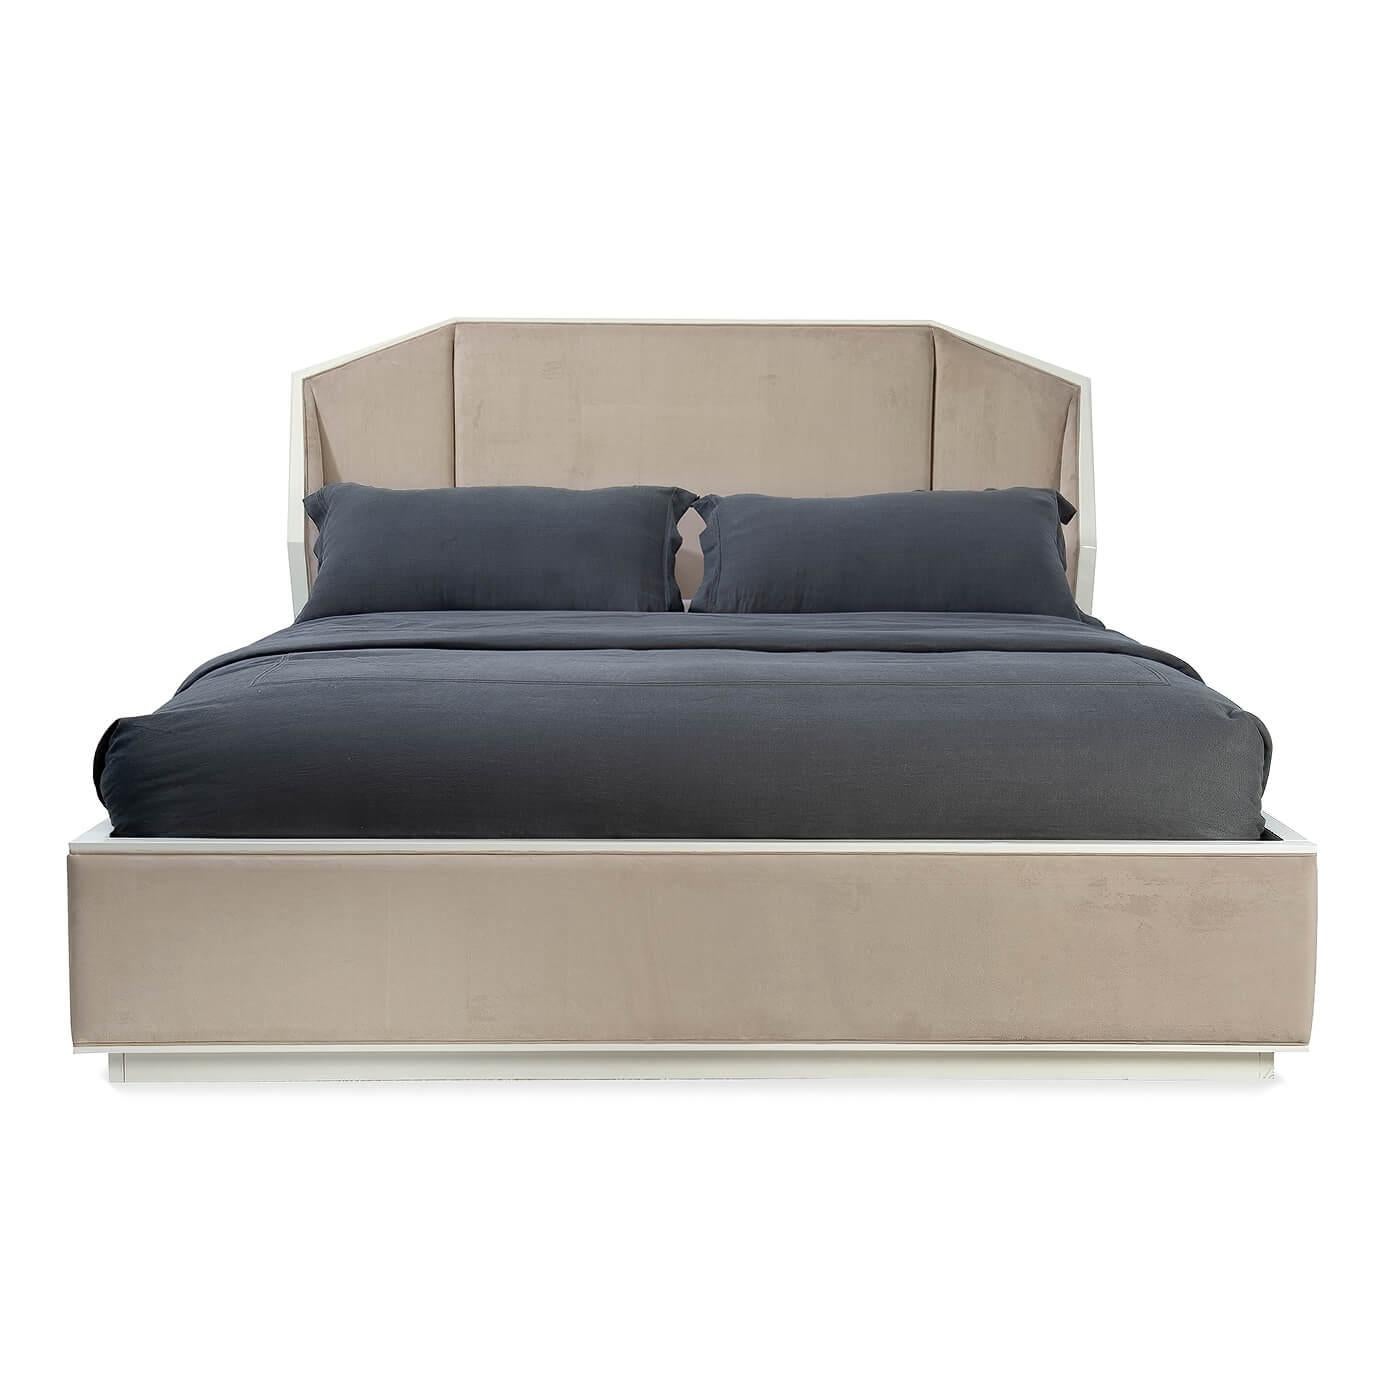 Ein Art Deco-inspiriertes gepolstertes französisches Bett mit einem gepolsterten, schrägen Eckkopfteil mit Umschlagseiten. Das vom Art déco inspirierte geometrische Design ist eine Anspielung auf die Architektur der 1930er Jahre. 

Mit großer